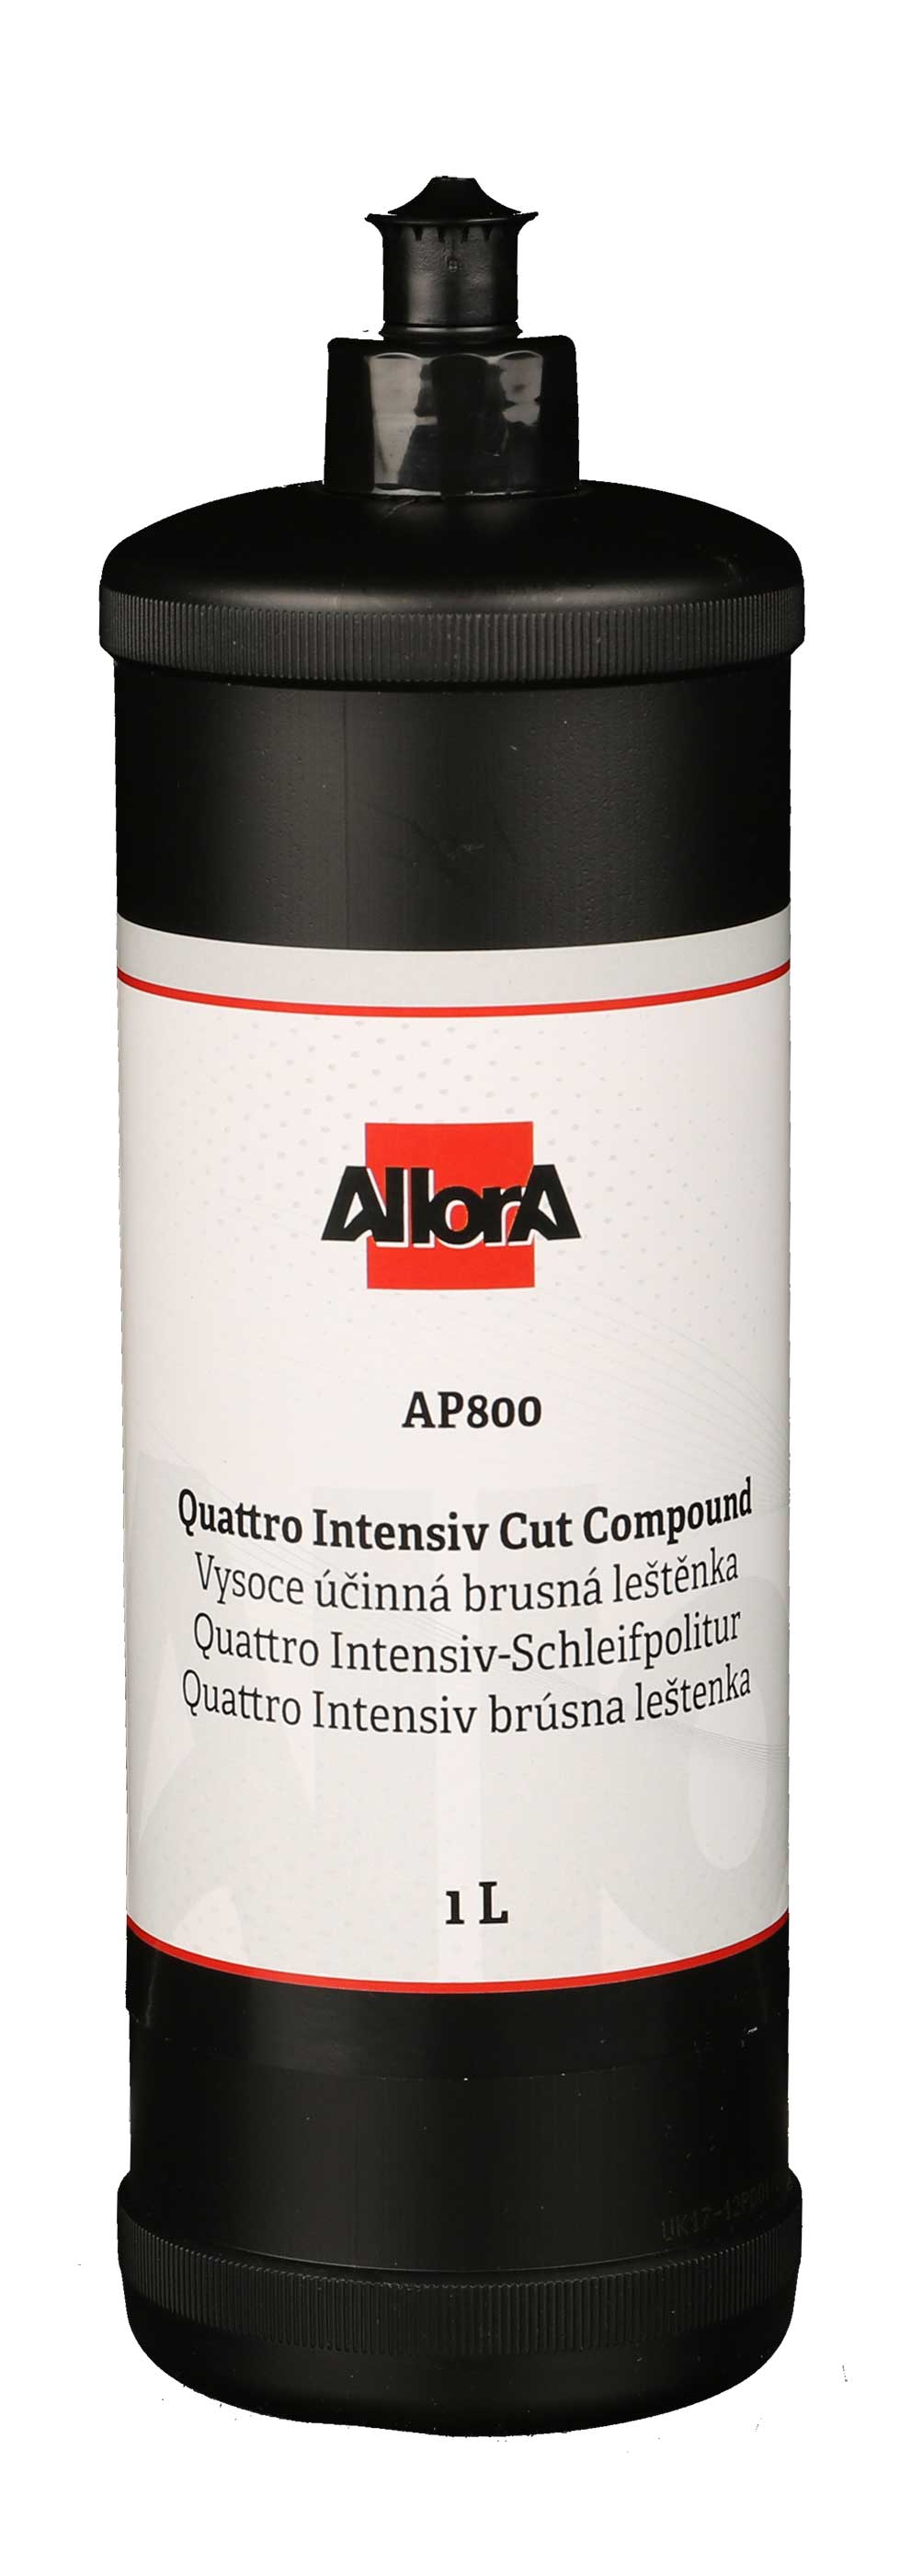 AllorA Quattro Intensiv-Schleifpolitur AP800